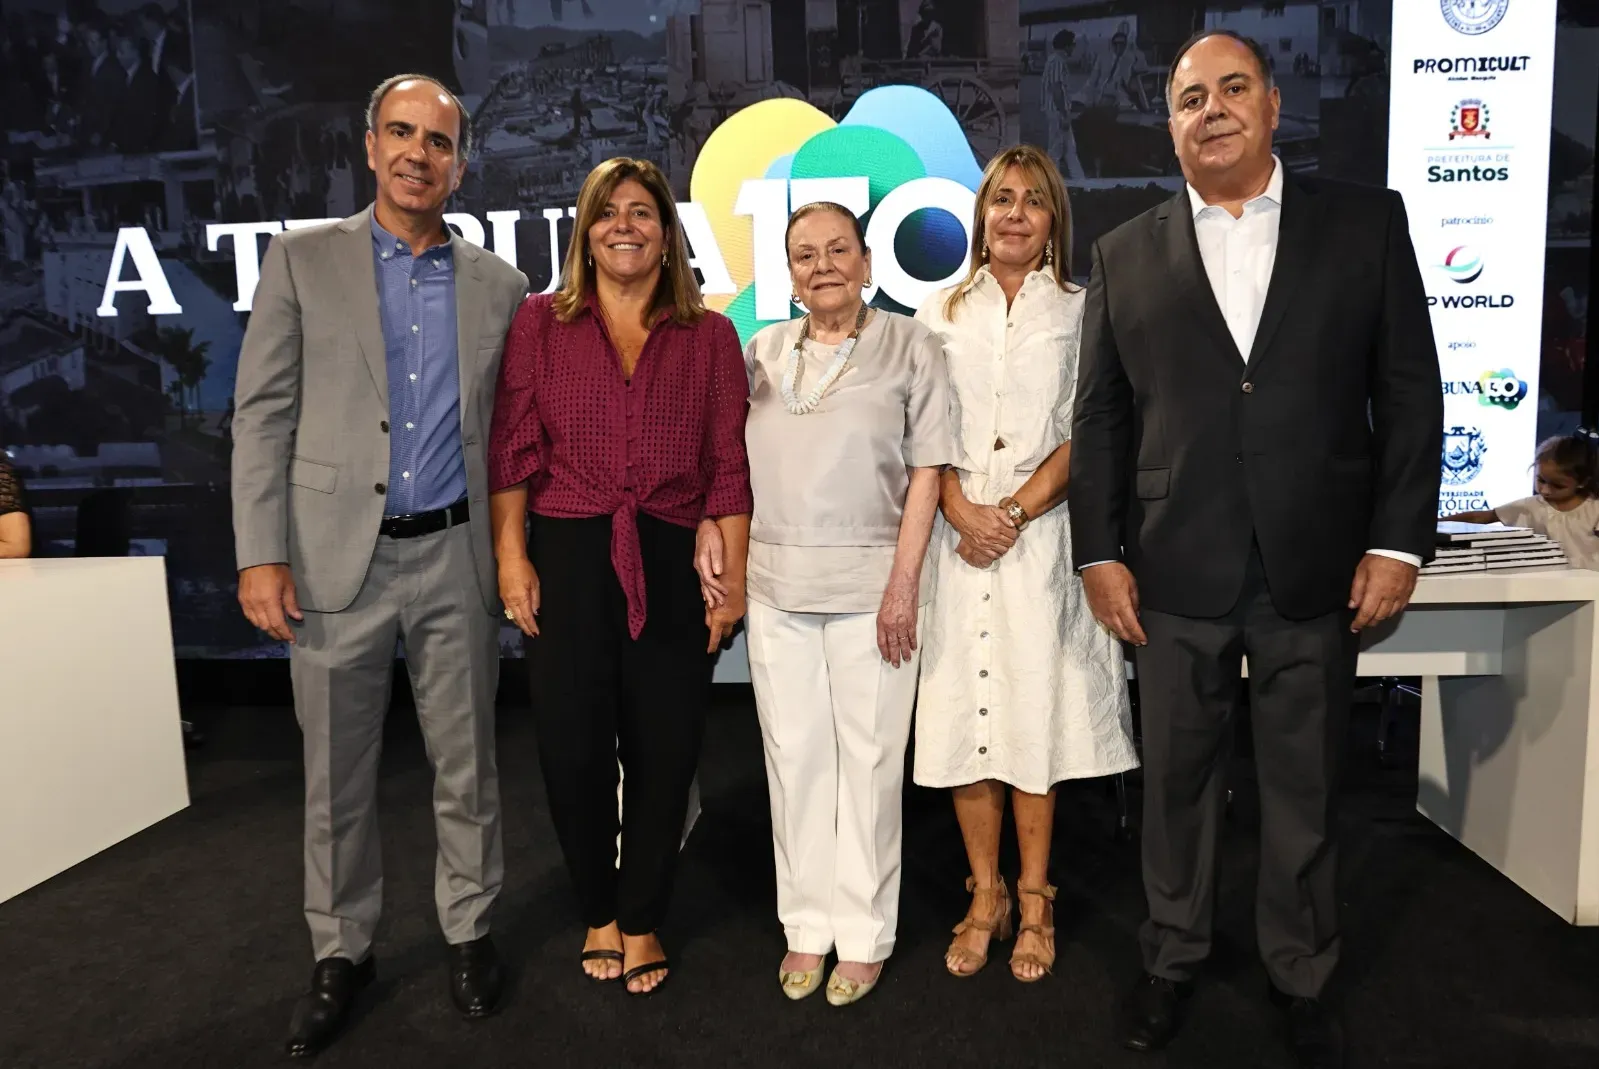 Família Santini, com Regina Clemente Santini, presidente do Conselho Administrativo do Grupo Tribuna, ao centro